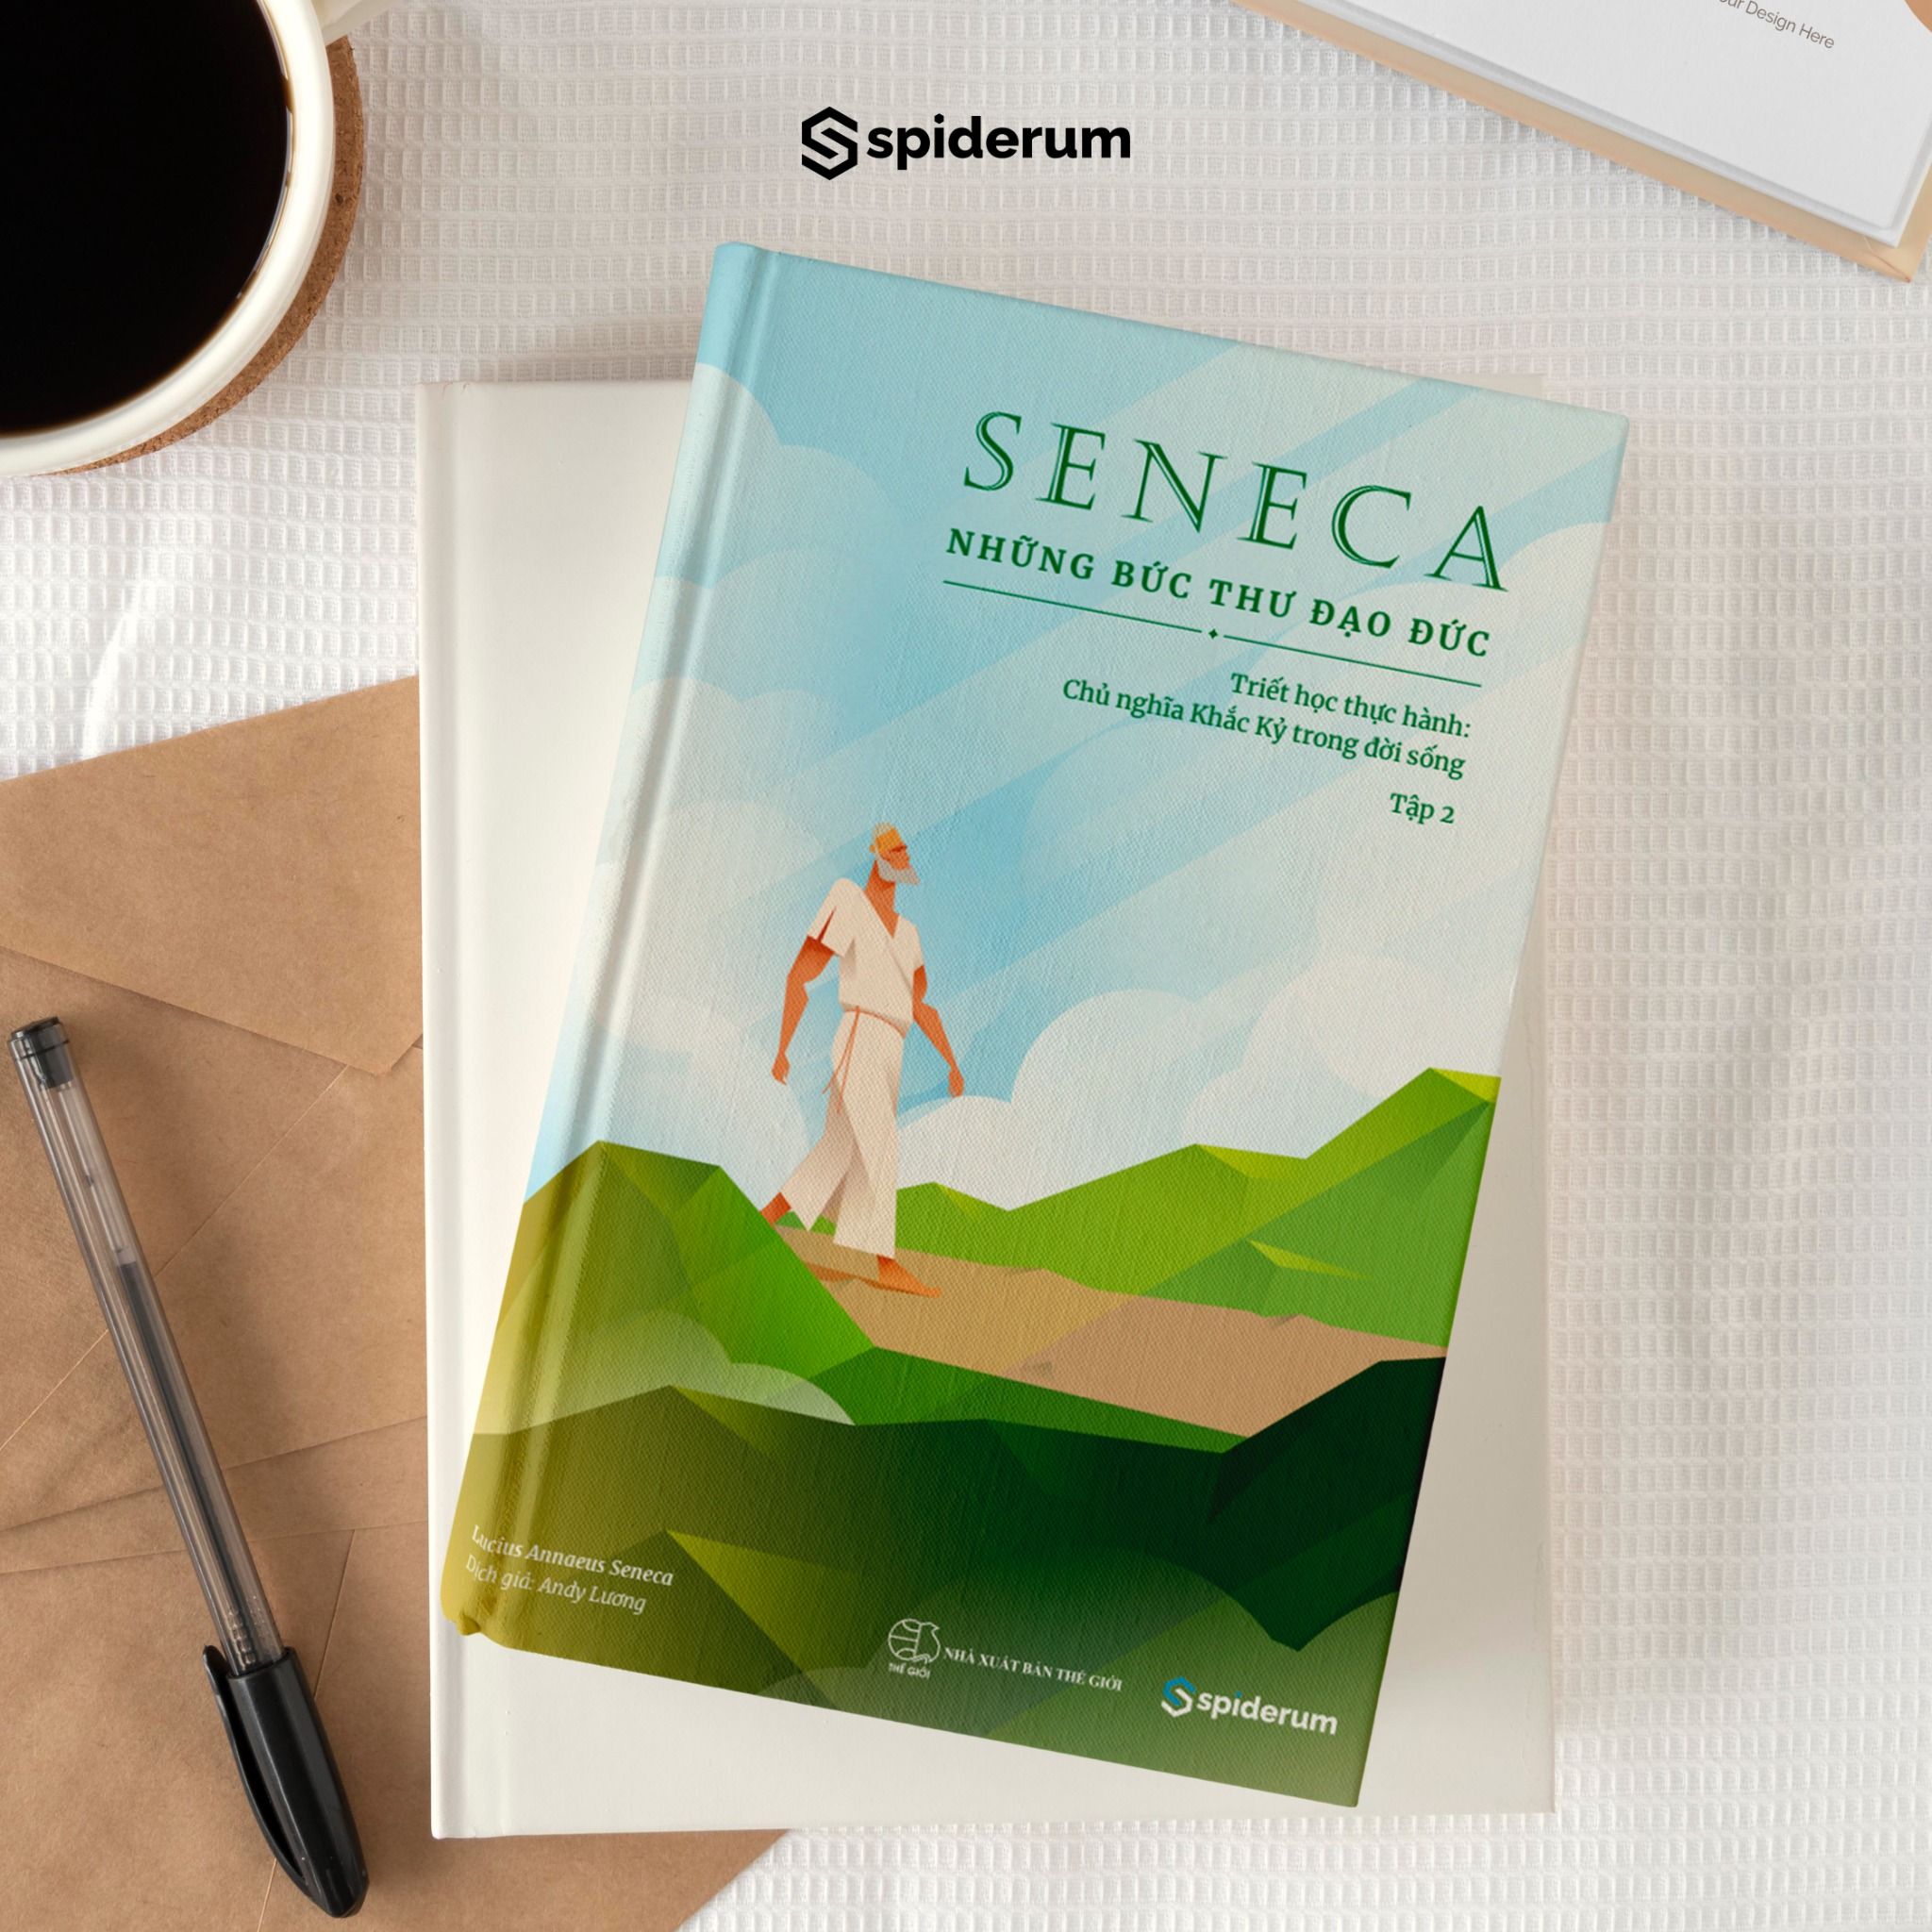  Combo Sách Seneca: Những Bức Thư Đạo Đức - Chủ Nghĩa Khắc Kỷ Trong Đời Sống Tập 1+2 (Tái bản 199k) - Tâm thế vững vàng trước khủng hoảng kinh tế 